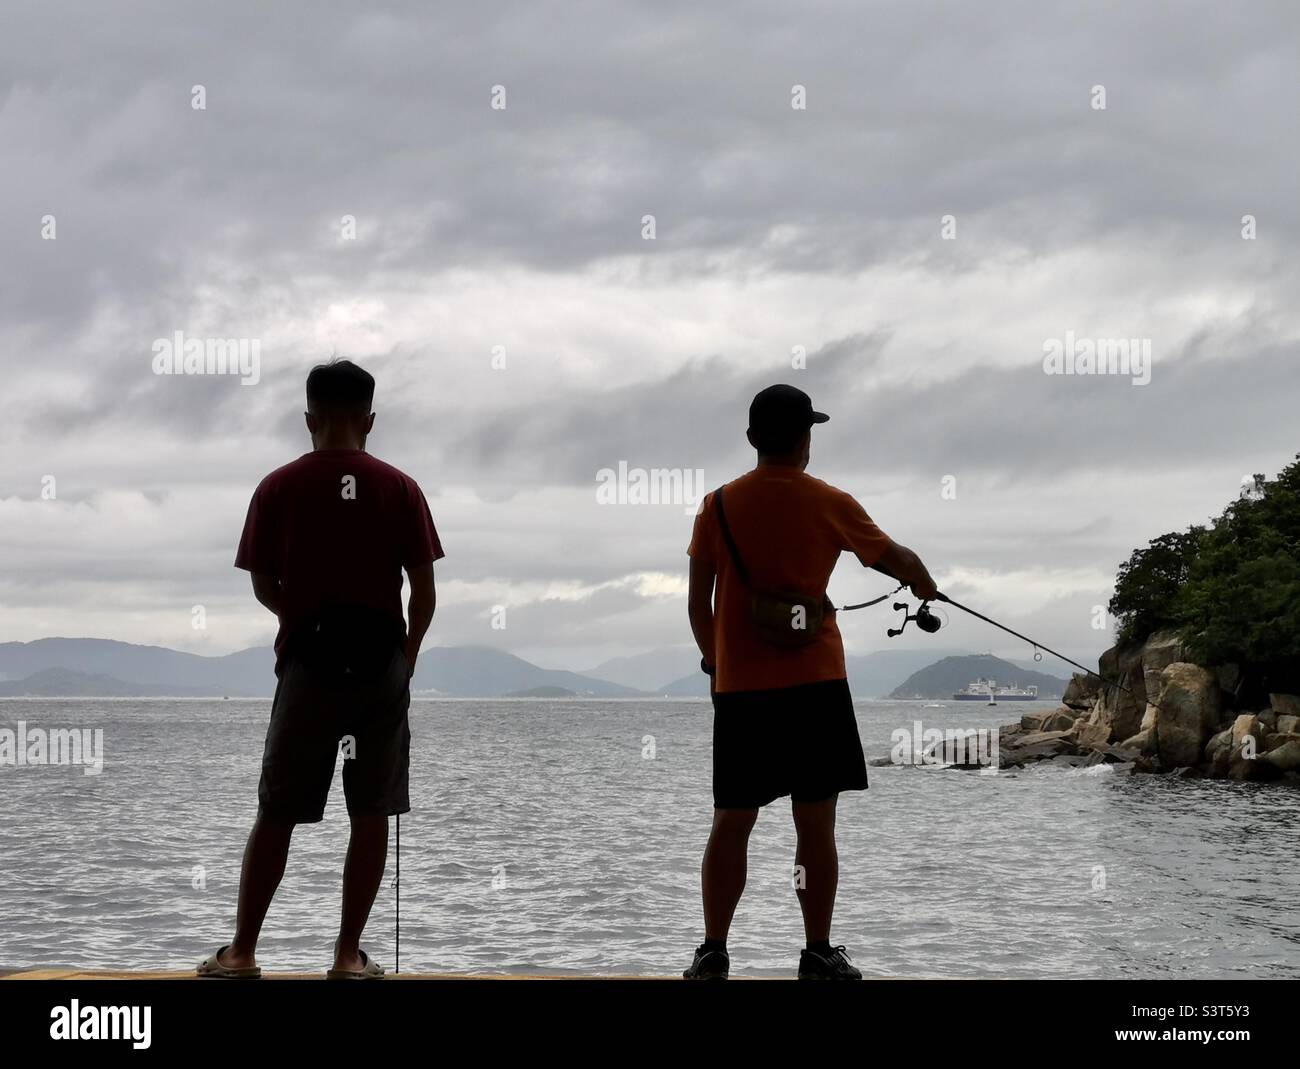 Local men fishing from the Yung Shue Wan pier on Lamma island, Hong Kong. Stock Photo